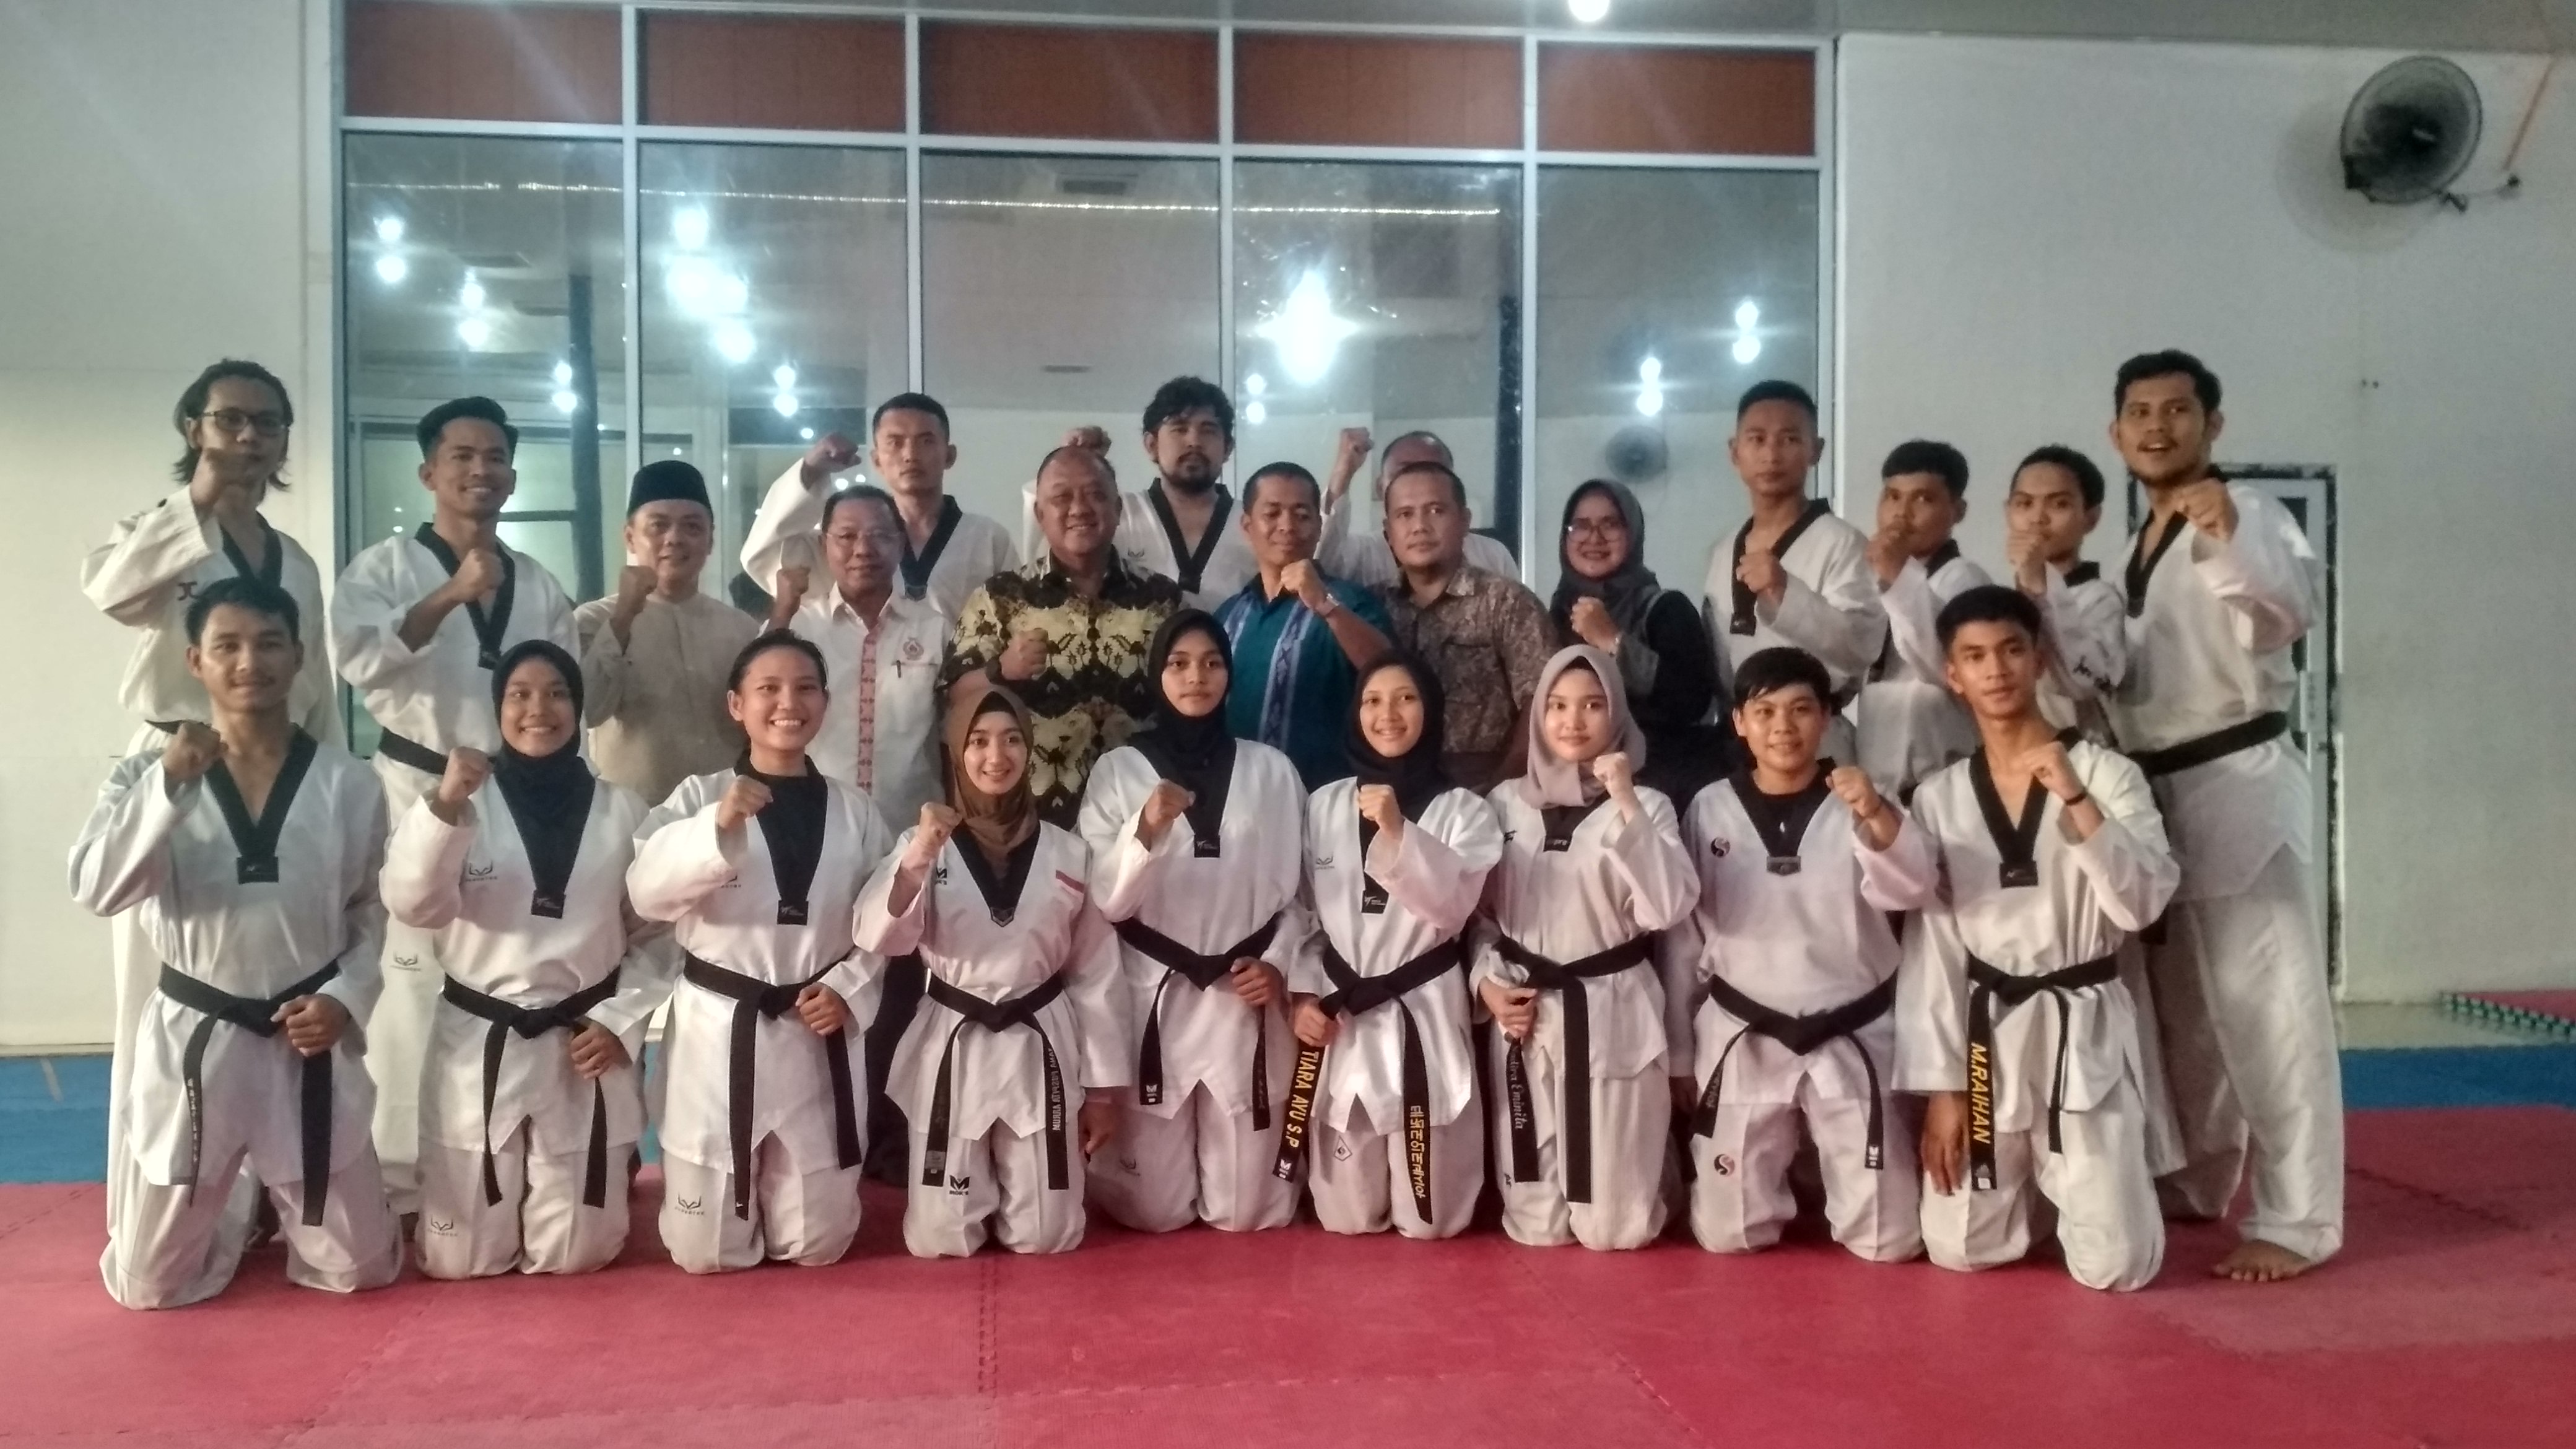 Tinjau Latihan Atlet Taekwondo Riau, Ketum KONI Pusat: Tugas Atlet Siapkan Keringat